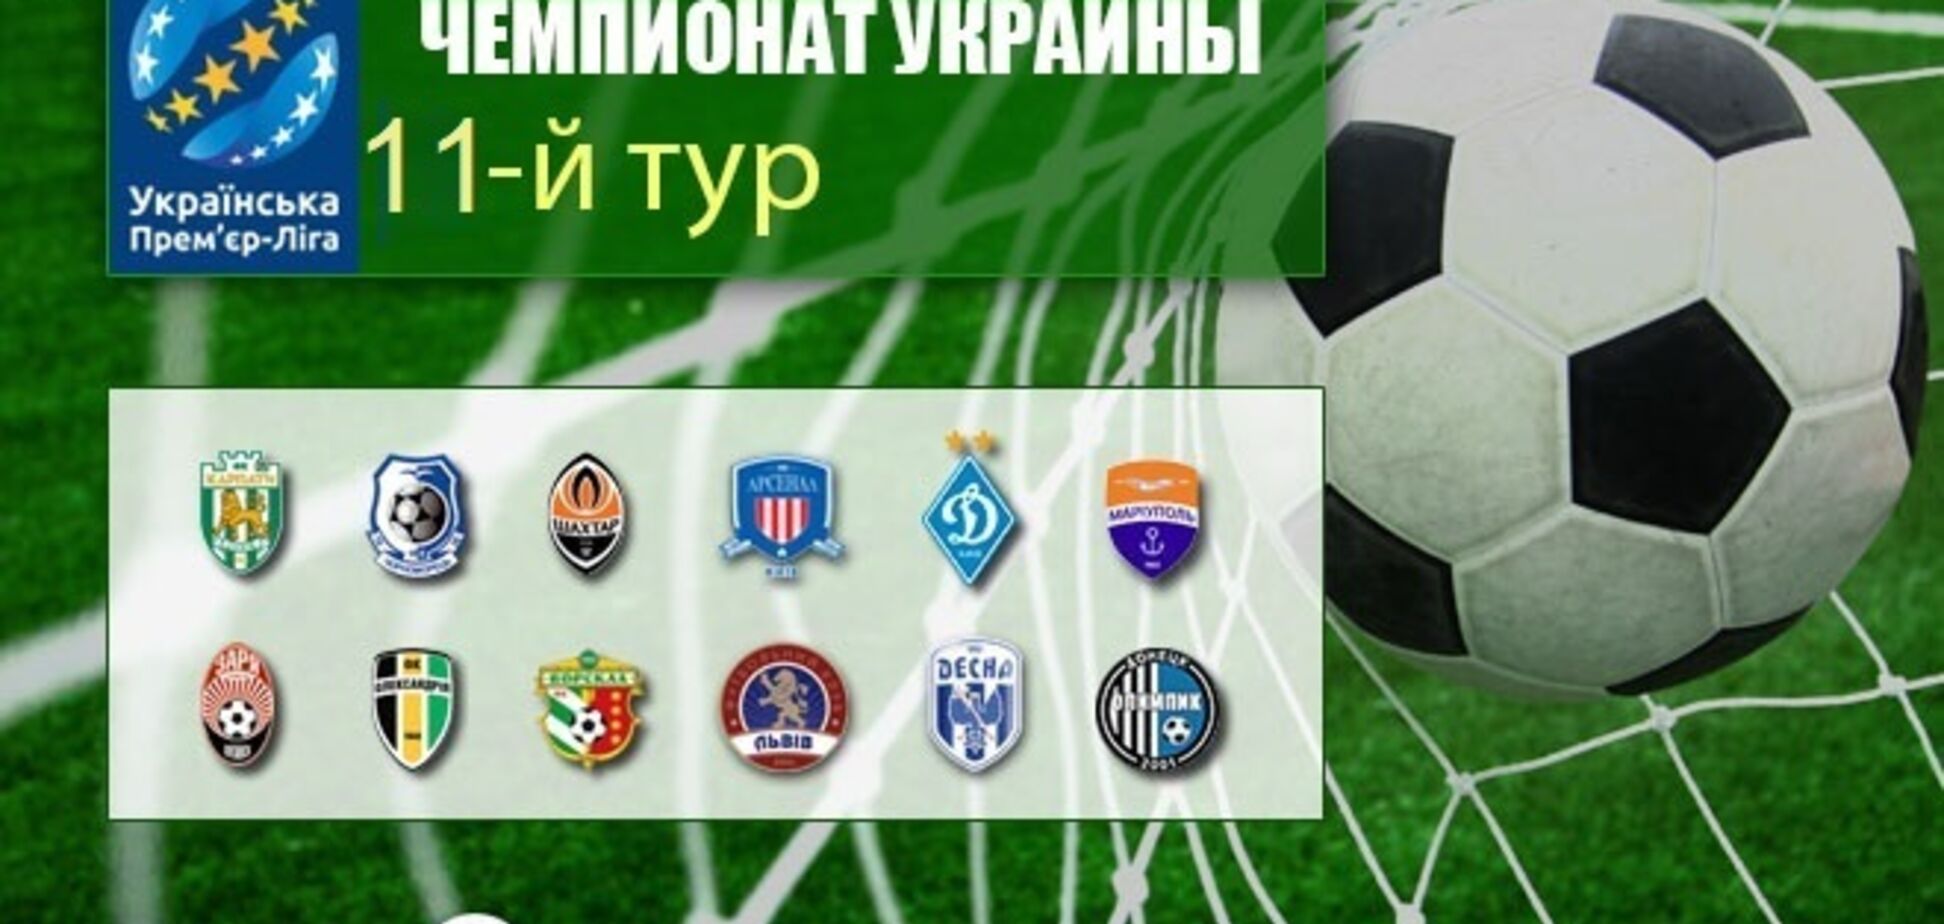 11-й тур чемпіонату України з футболу: результати та огляди